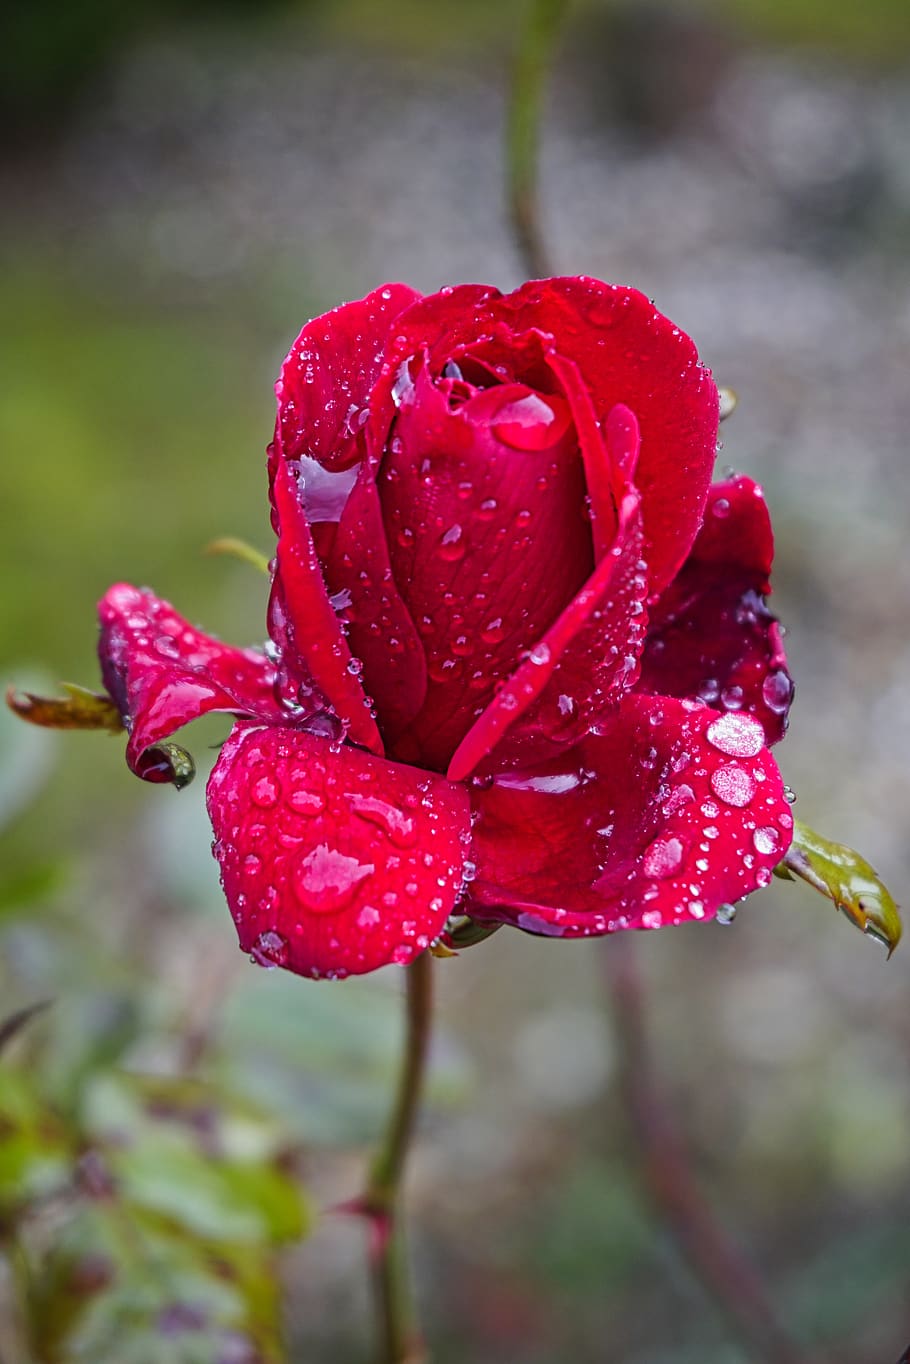 rose, rain, rainy, drip, raindrop, flower, nature, wet, red, macro